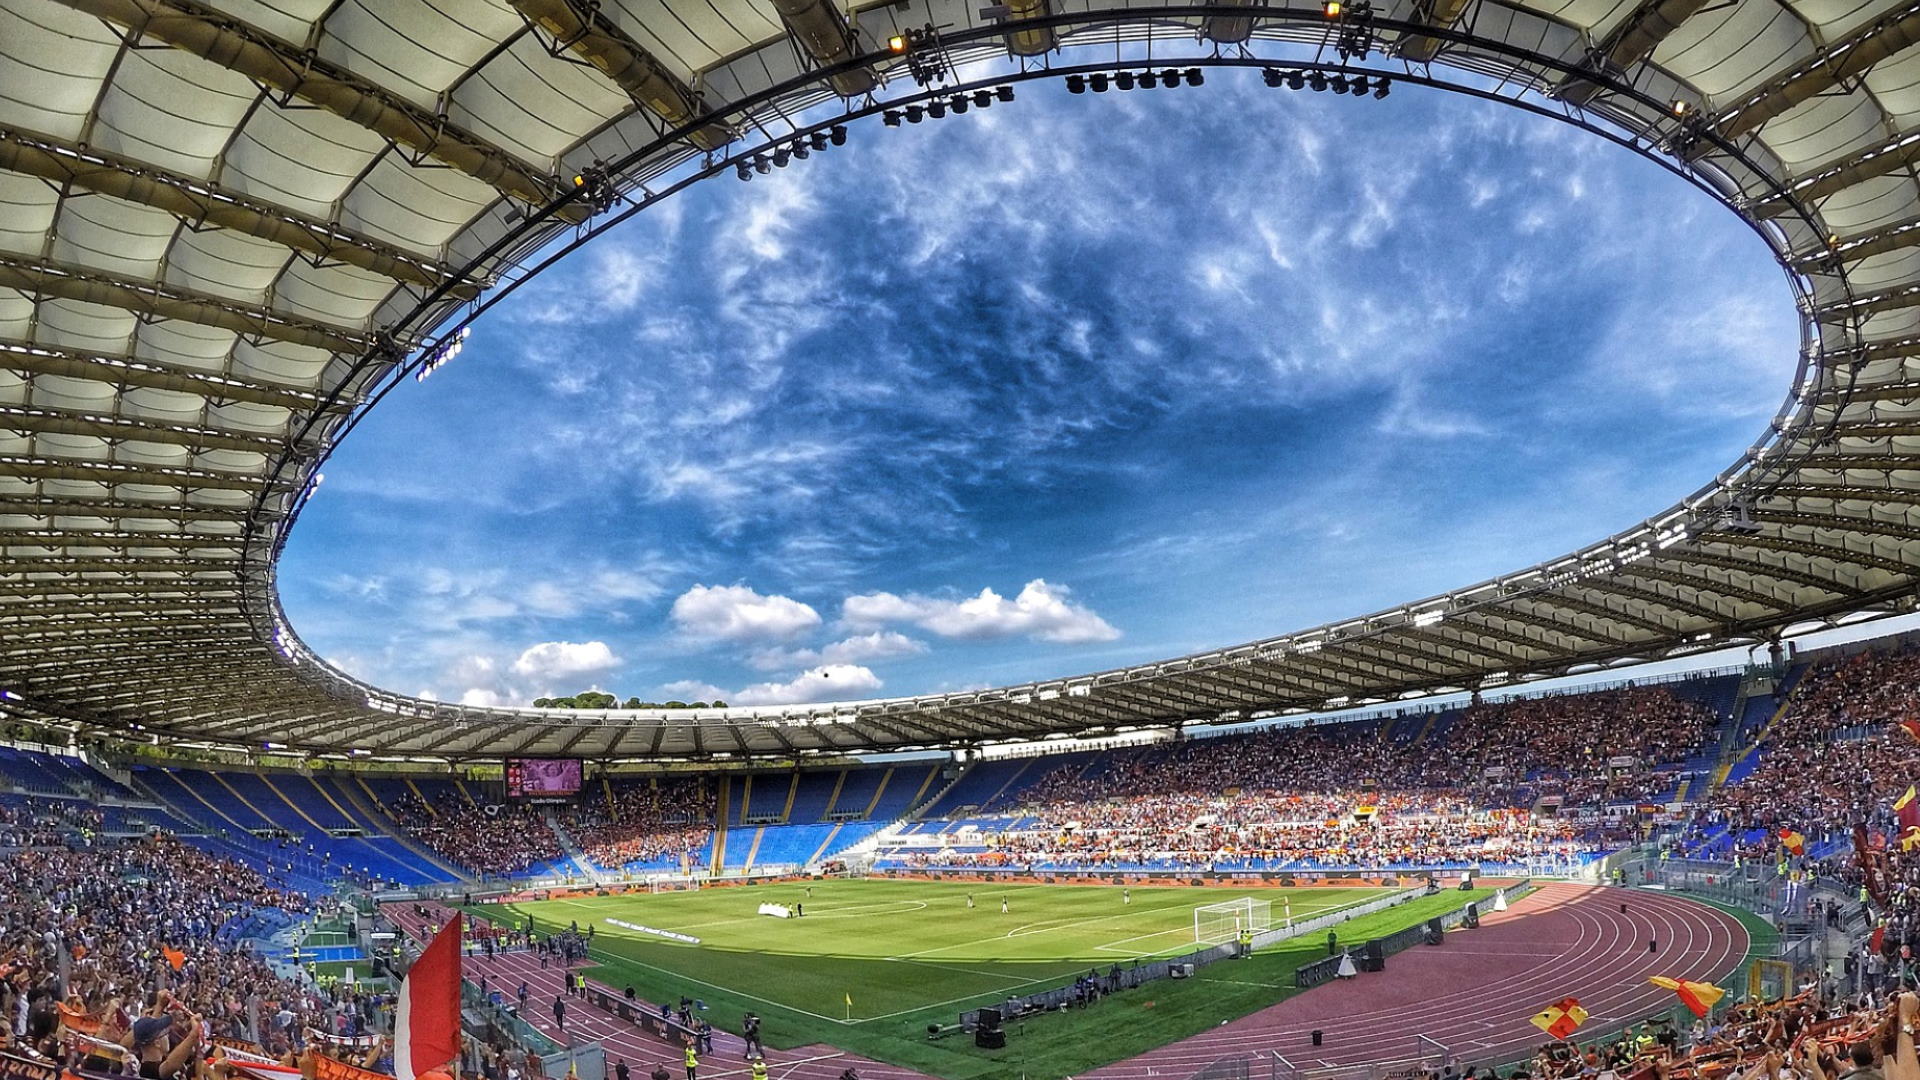 Stadio olimpico roma